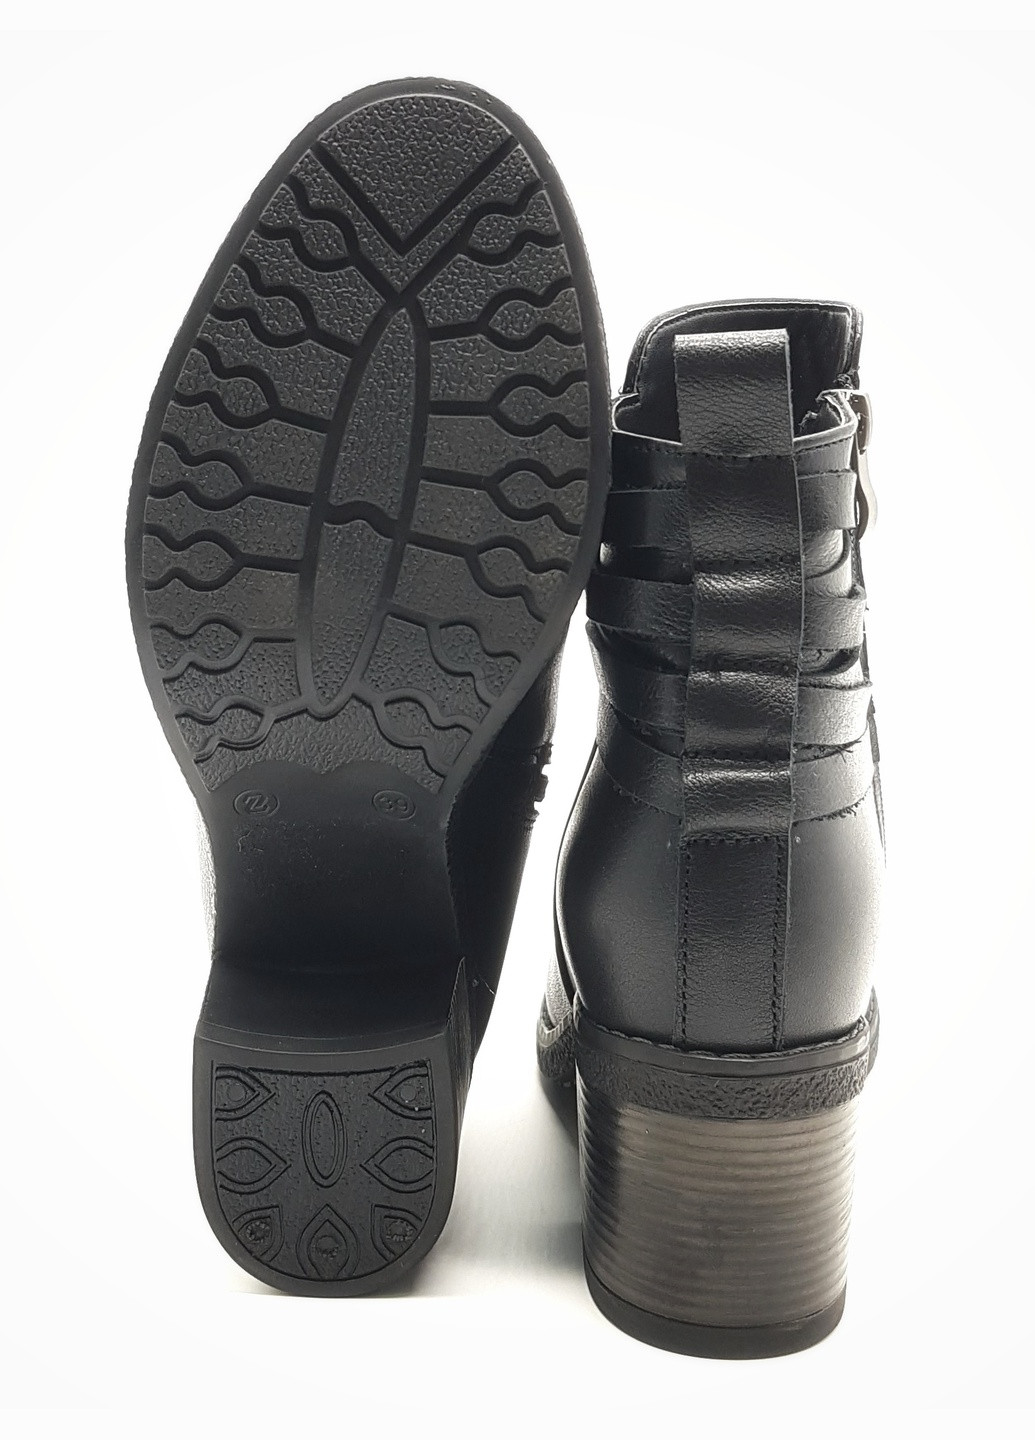 Осенние женские ботинки зимние черные кожаные kr-19-3 26 см(р) Kristal